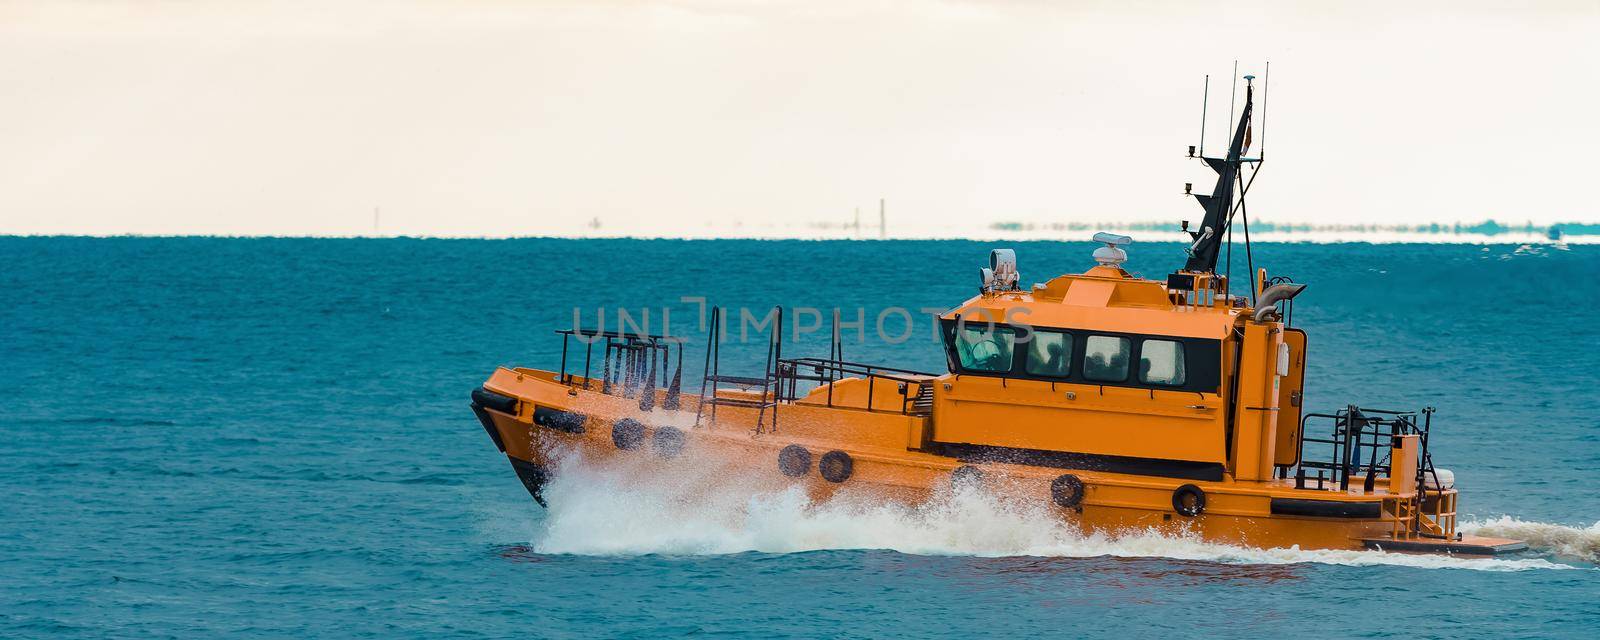 Orange pilot ship by InfinitumProdux